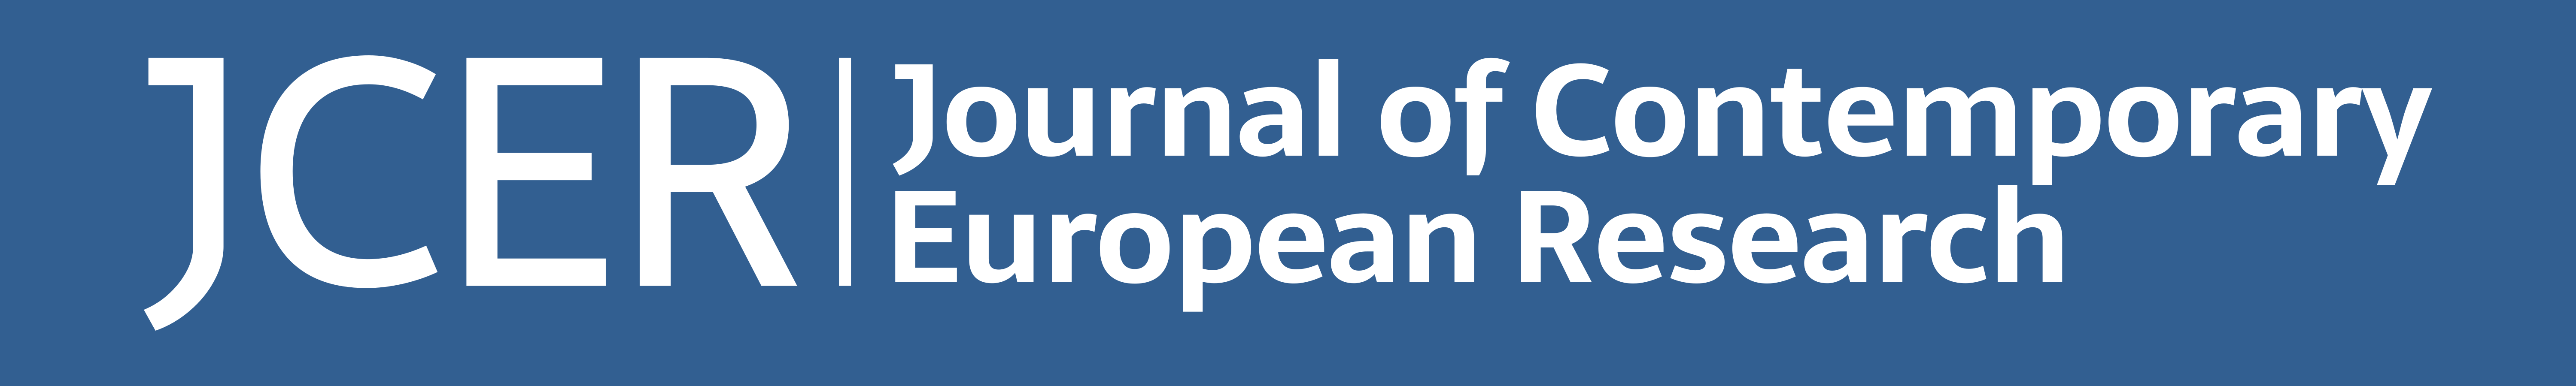 JCER: Journal of Contemprary European Research